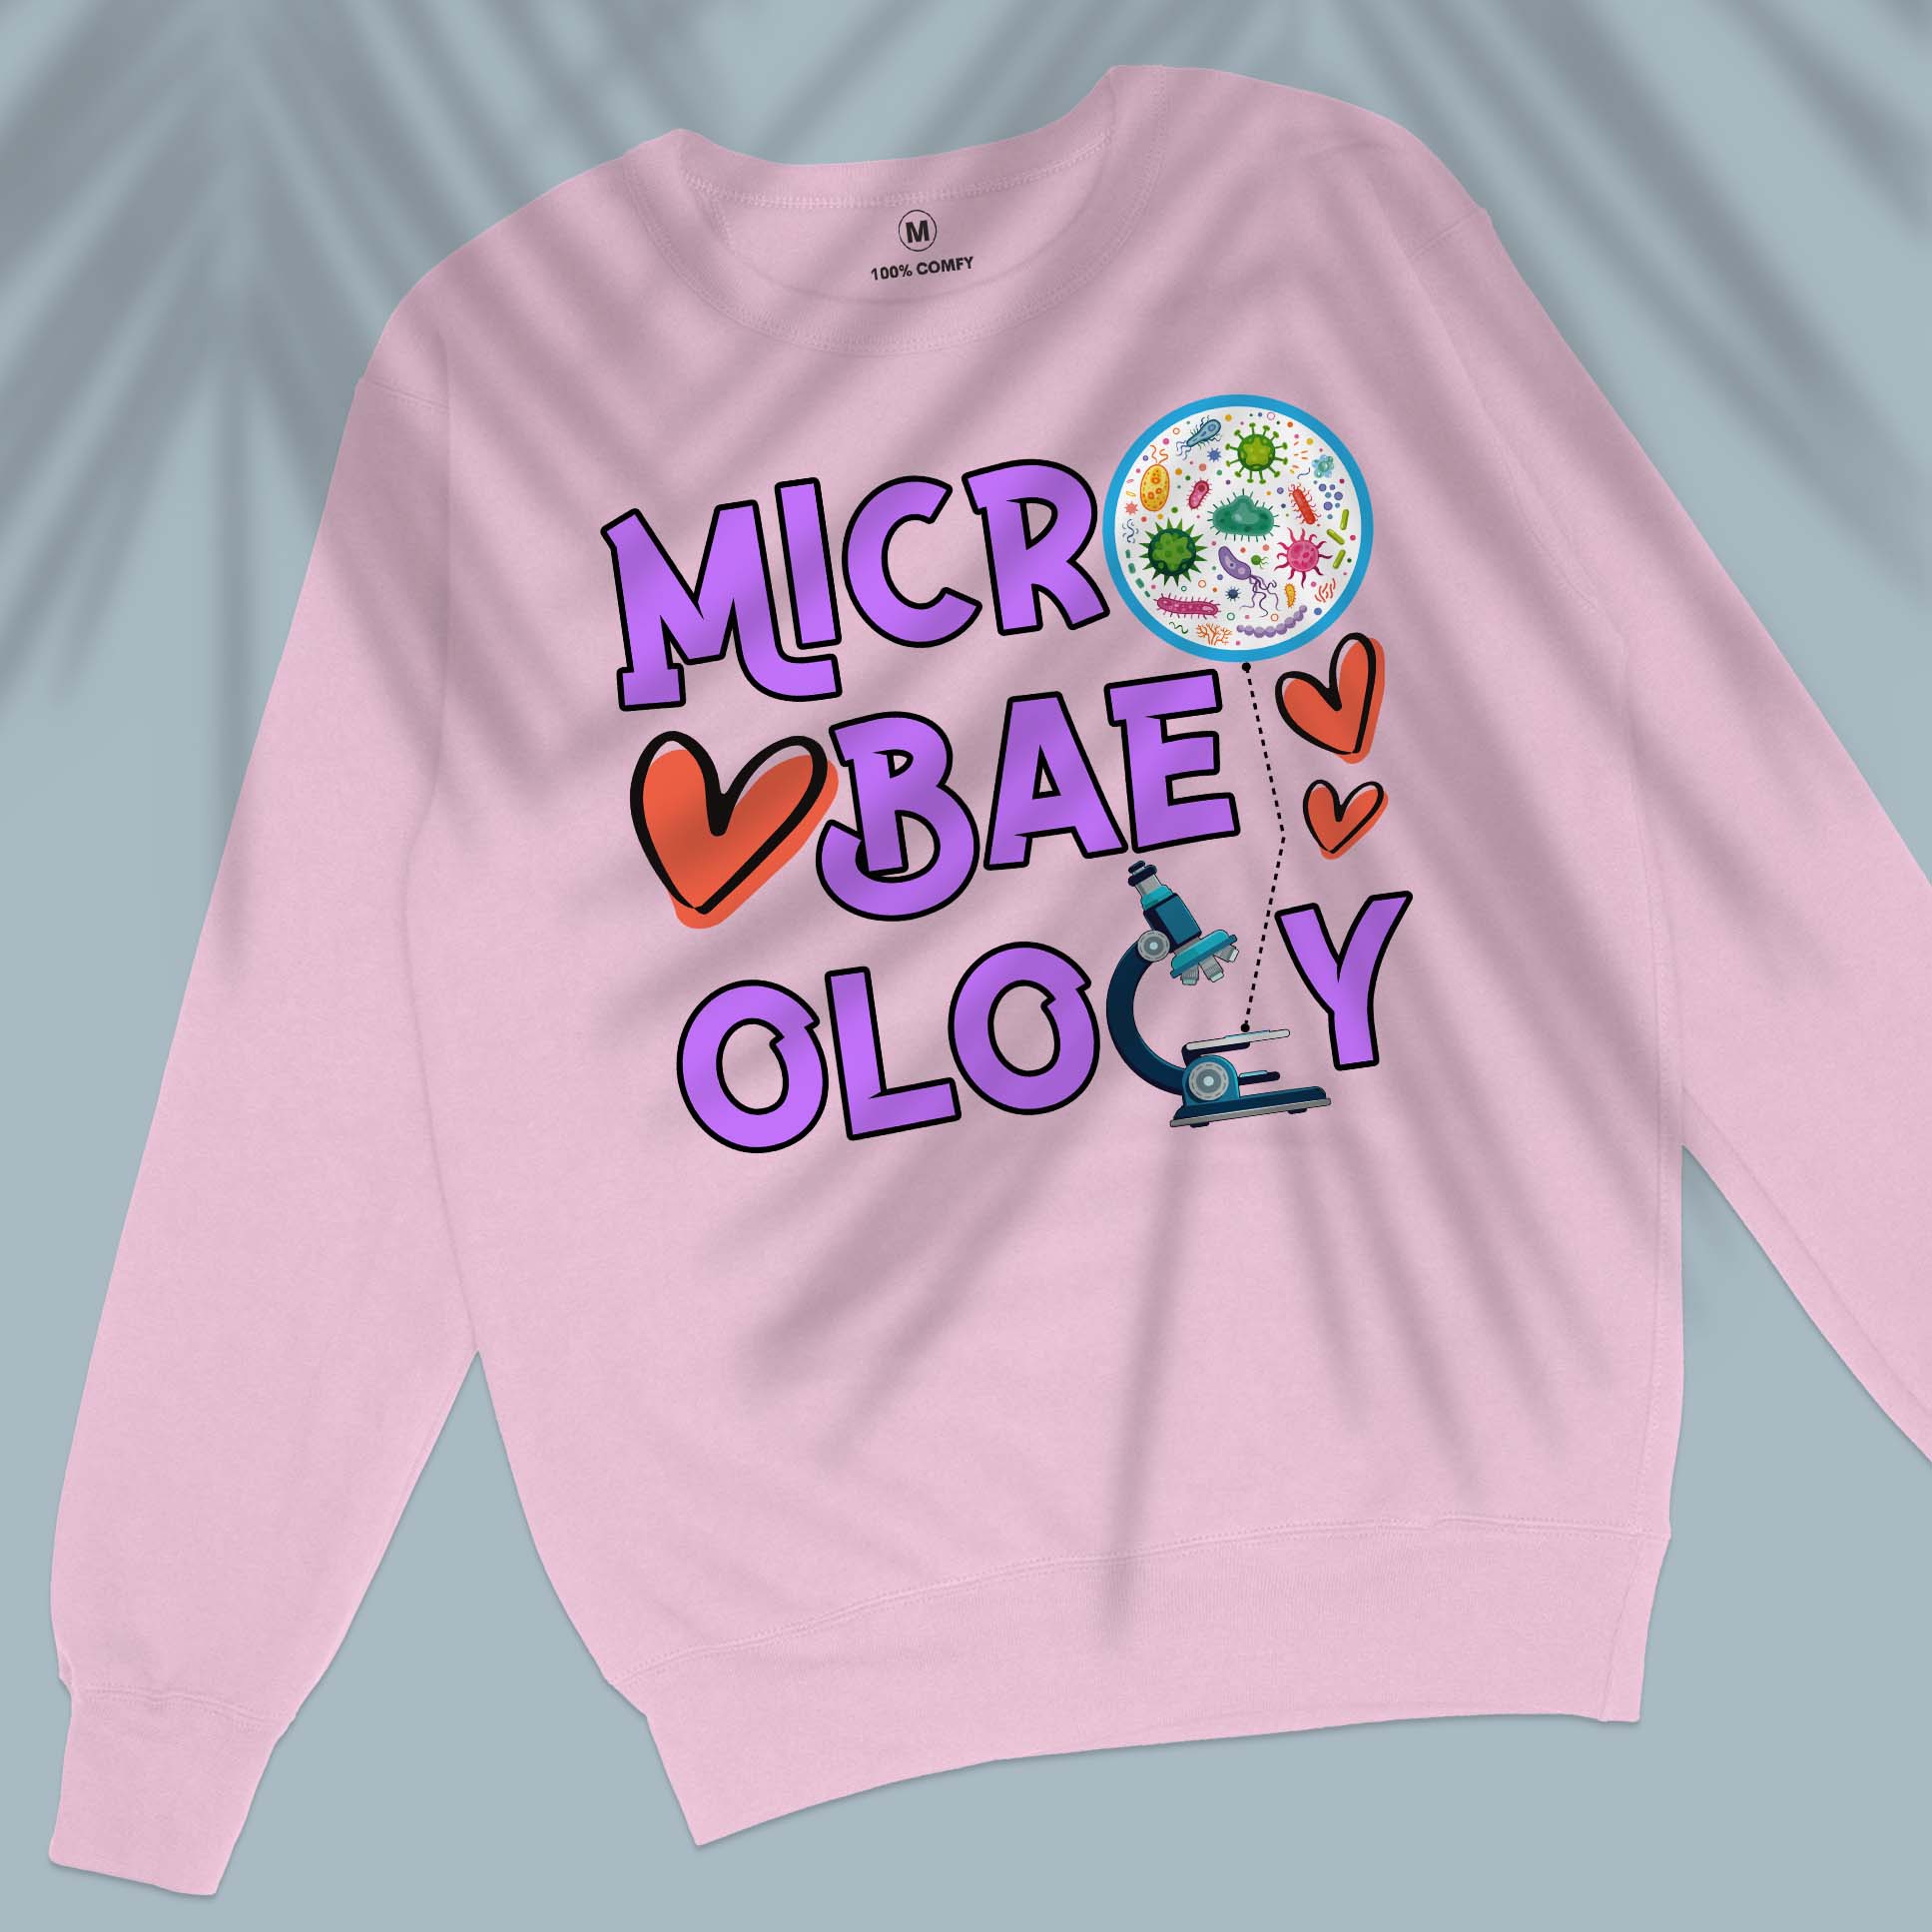 Micro-bae-ology - Unisex Sweatshirt